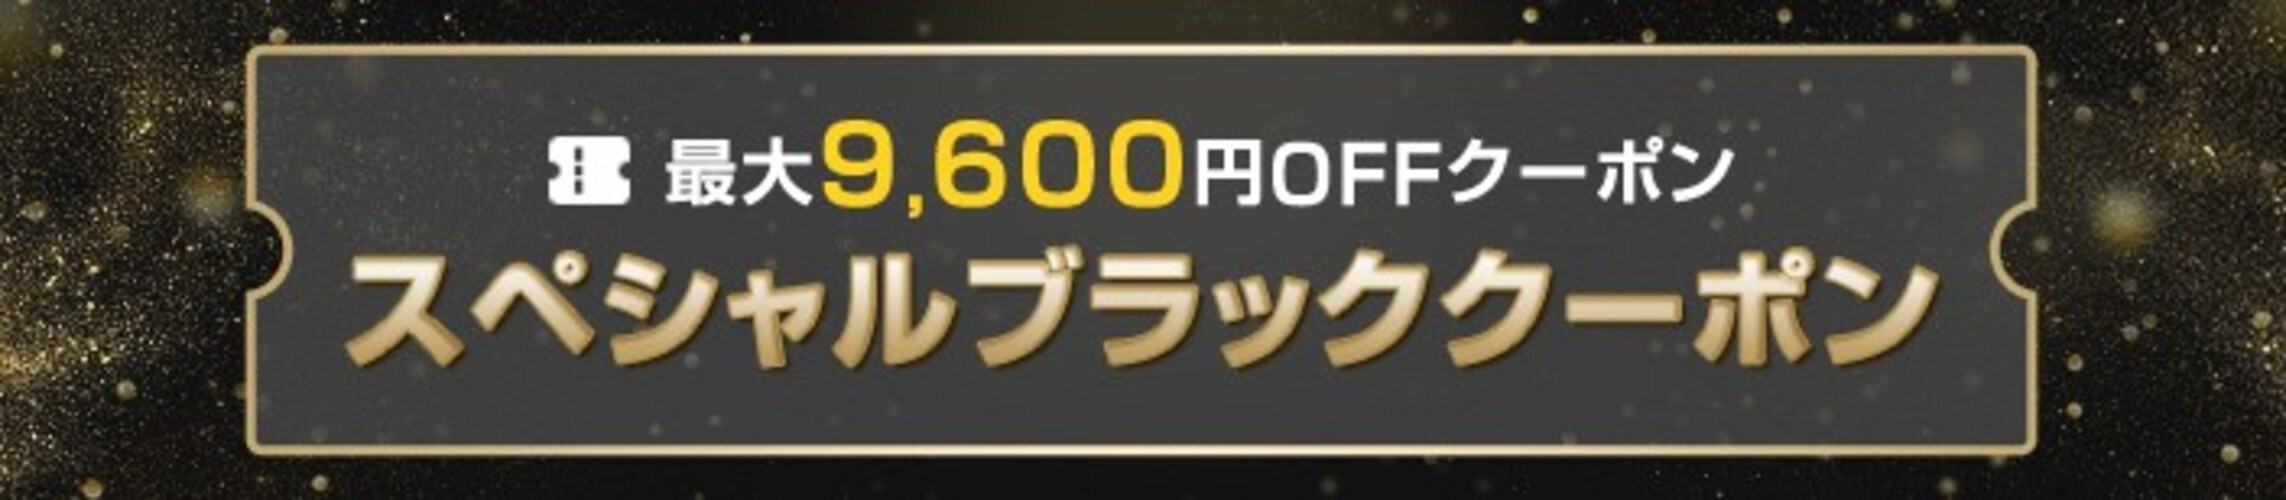 楽天ブラックフライデーの最大9600円OFFスペシャルブラッククーポン